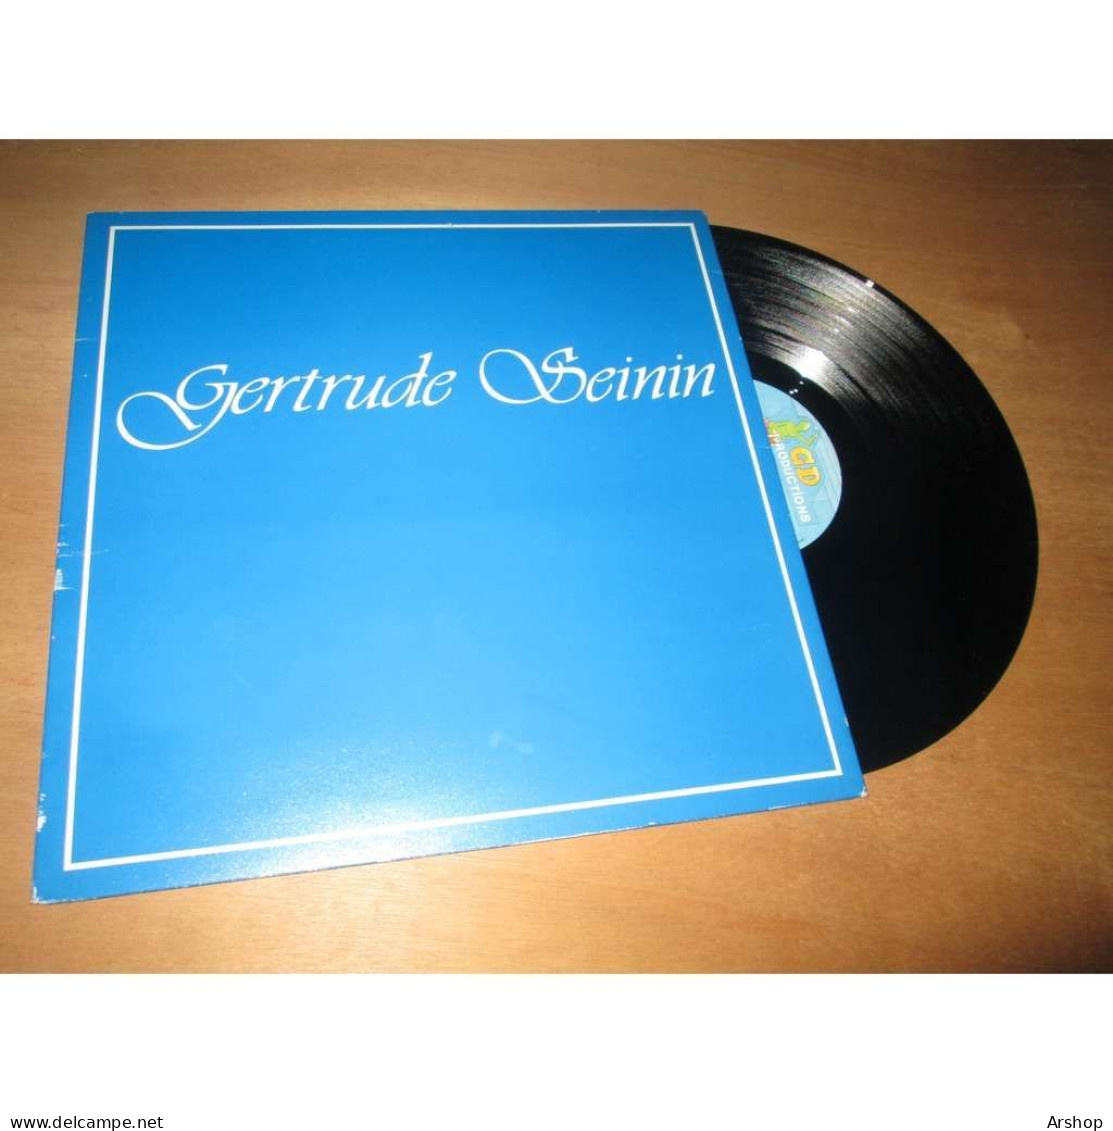 GERTRUDE SEININ Album Eponyme MARTINIQUE / MUSIQUE ANTILLAISE - GD Productions GD 032 Lp 1985 - Musiques Du Monde